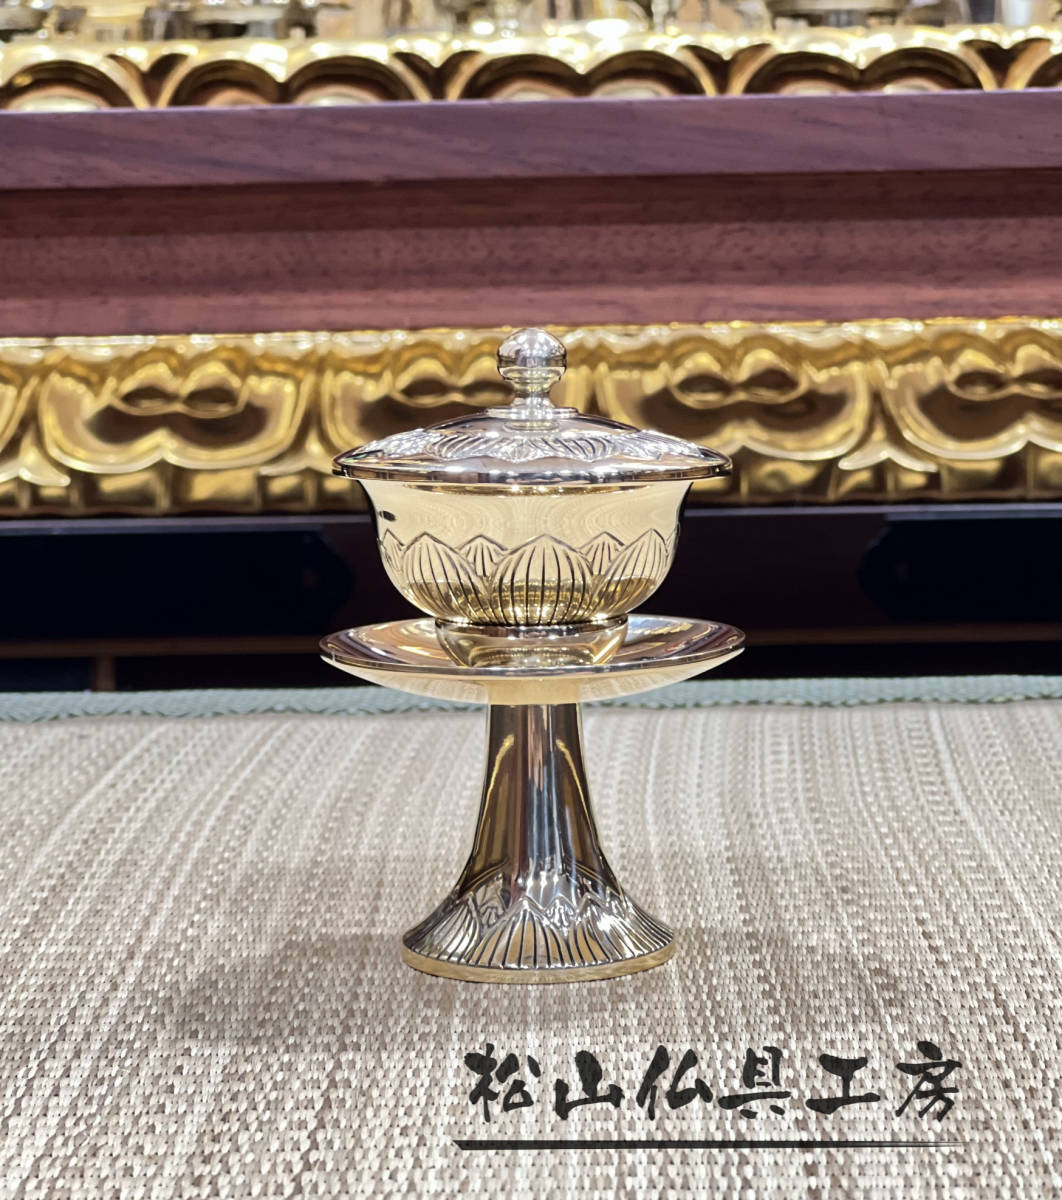 「松山仏具工房出品」密教法具 筋彫 茶湯器 真鍮製磨き仕上げ